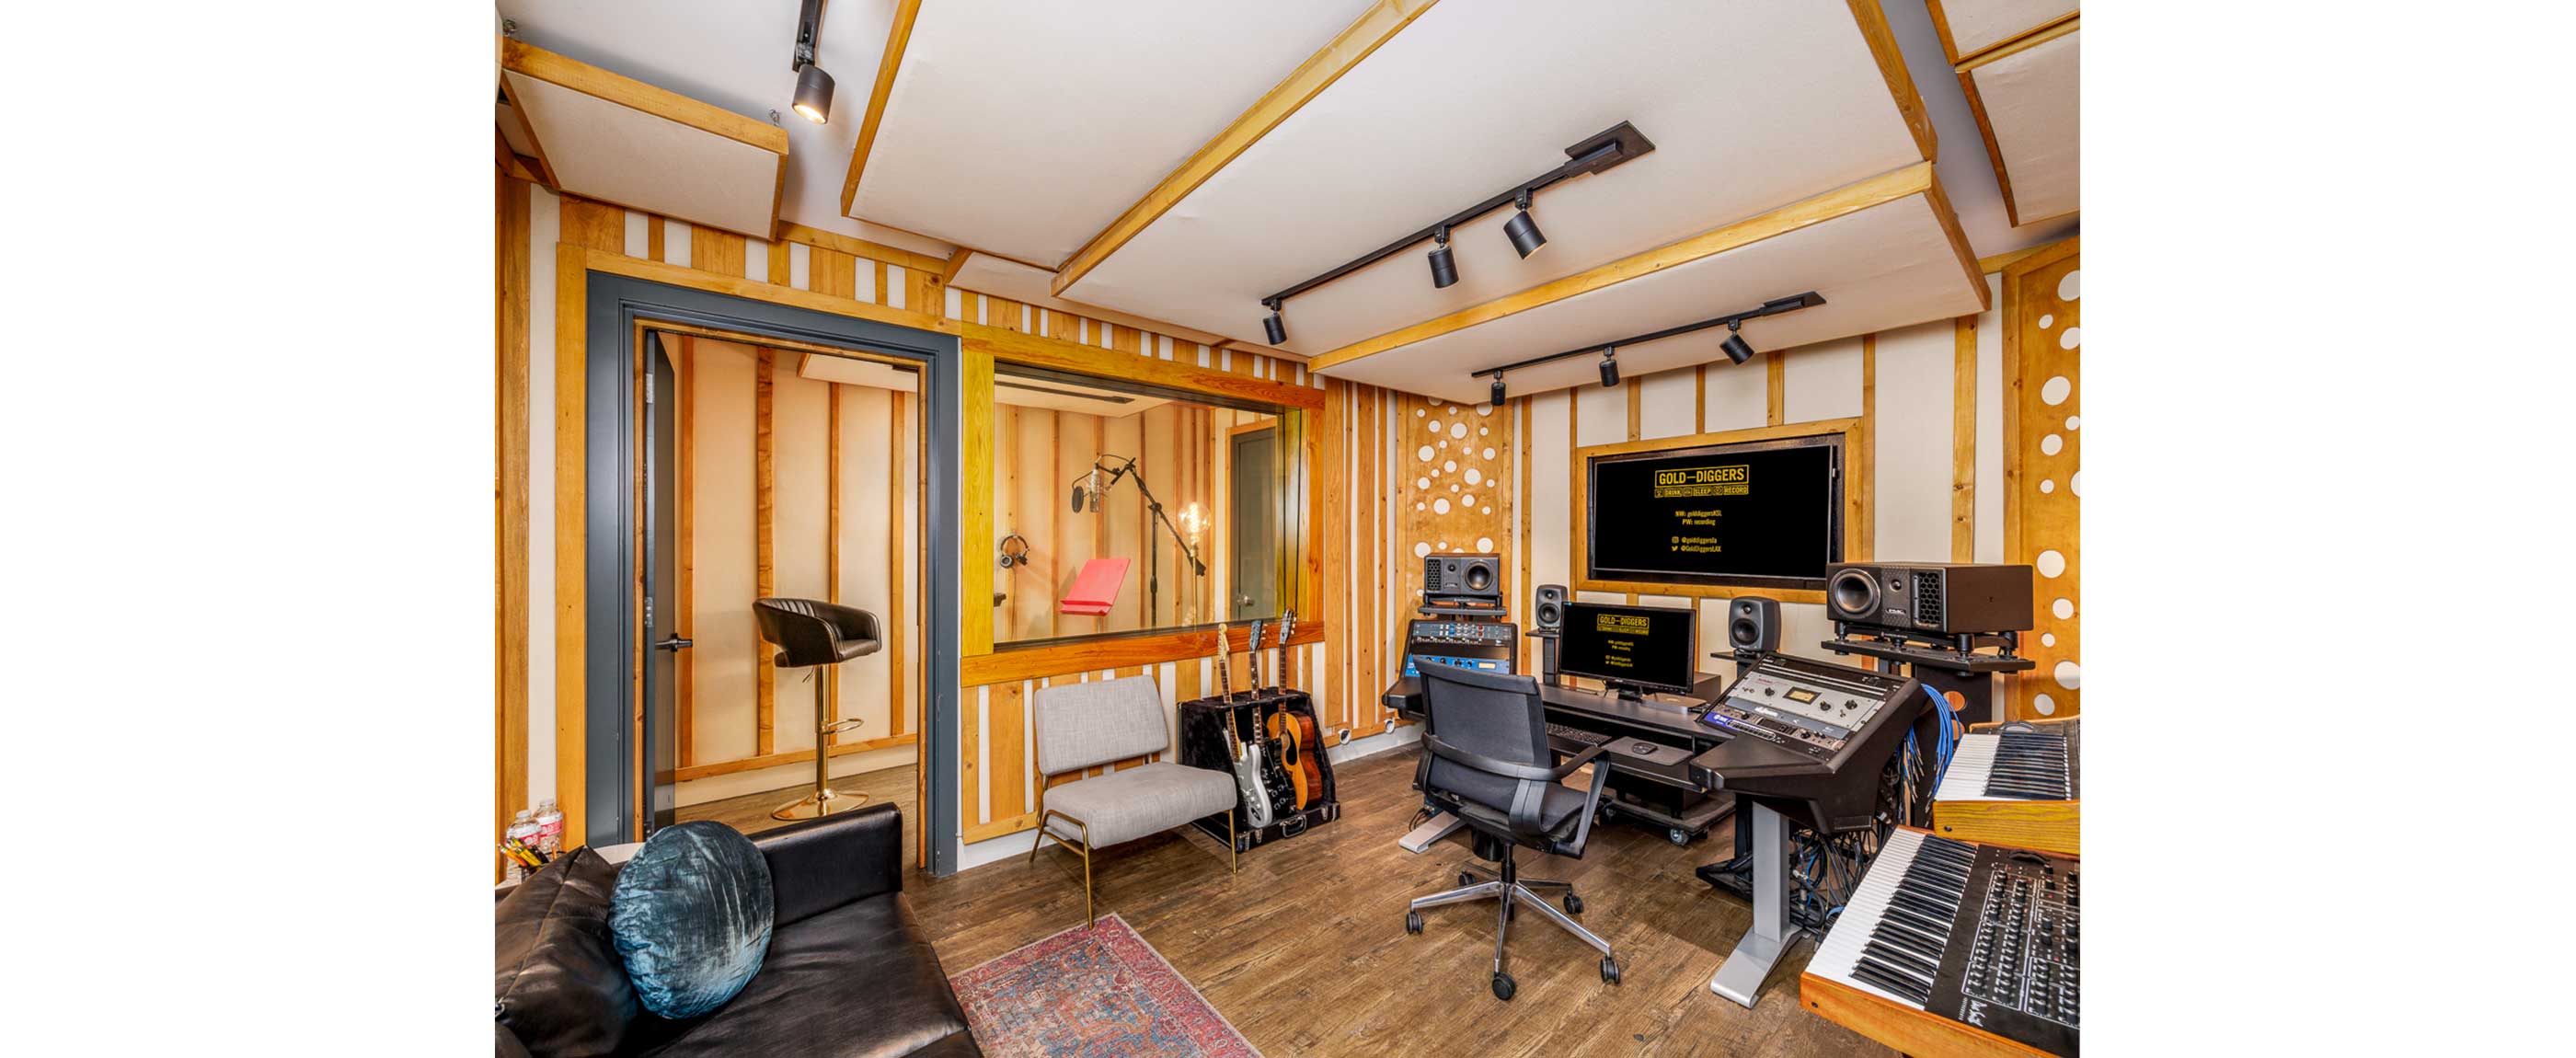 Gold-Diggers Studio 5